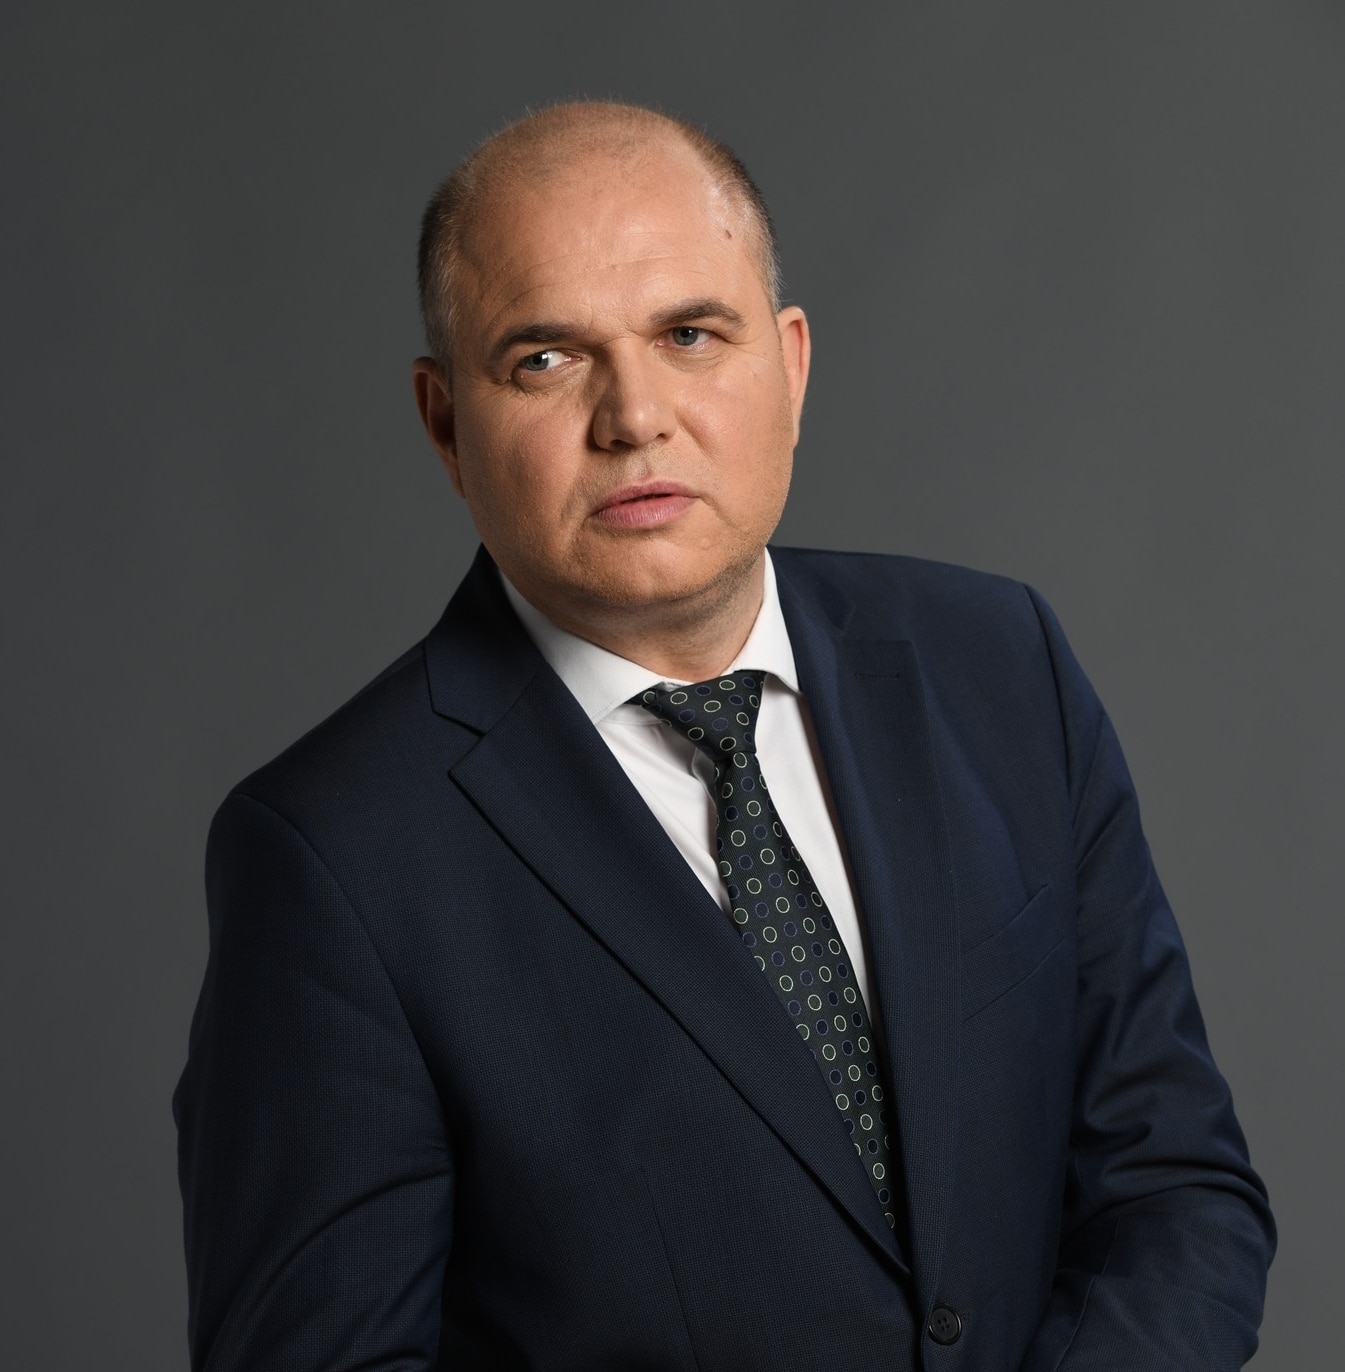 Политикът и общественик Владислав Панев написа коментар в социалната мрежа